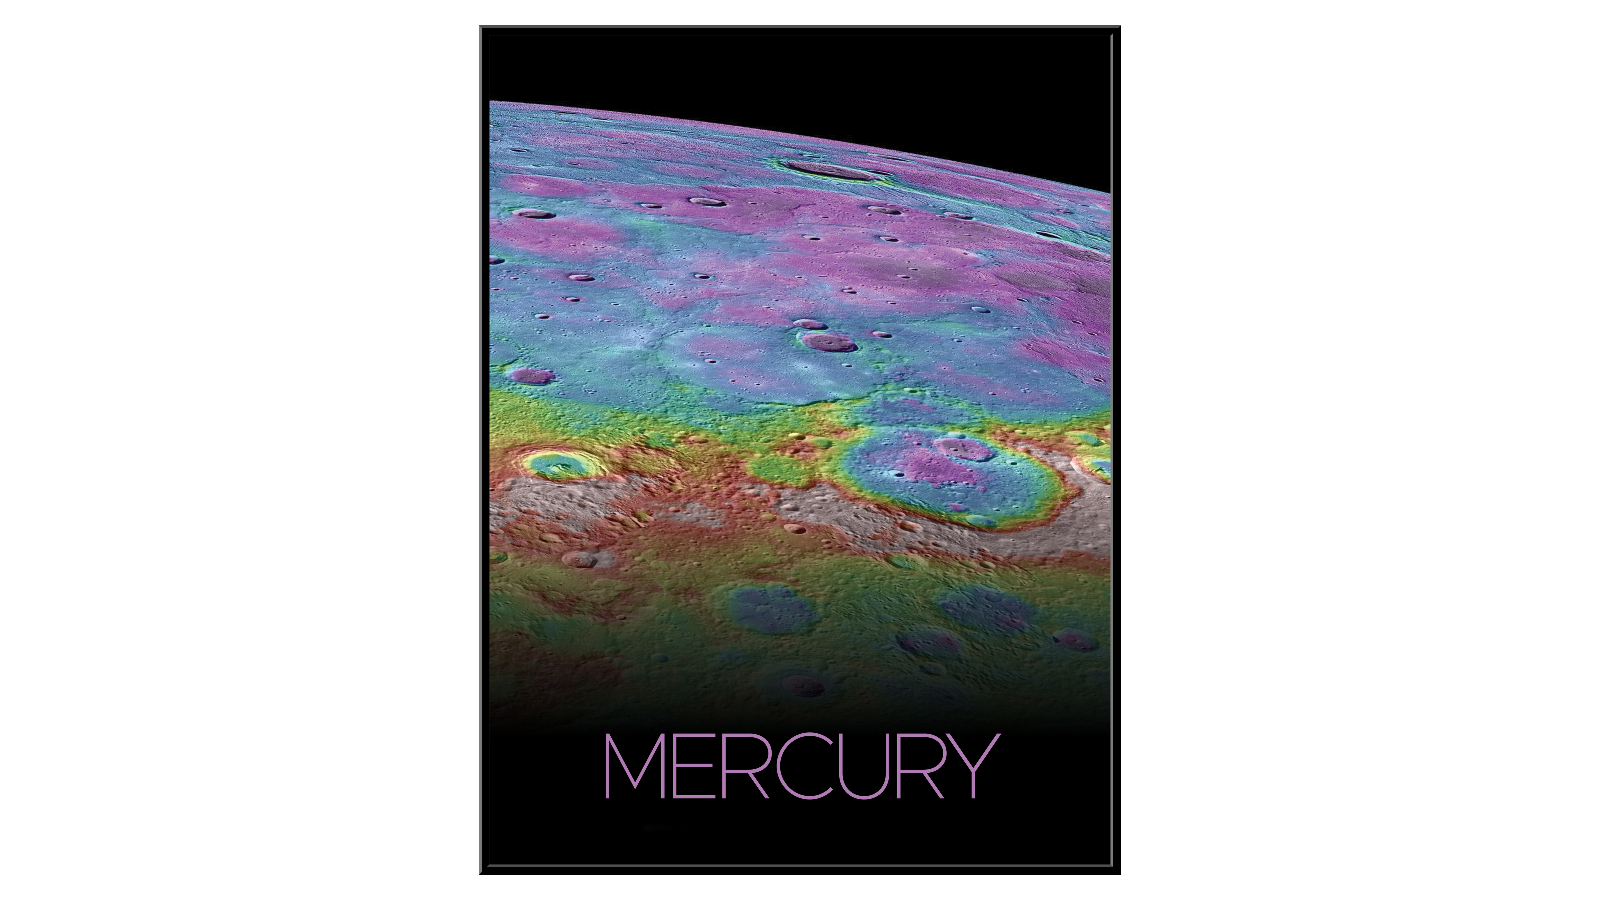 Mercury - 3